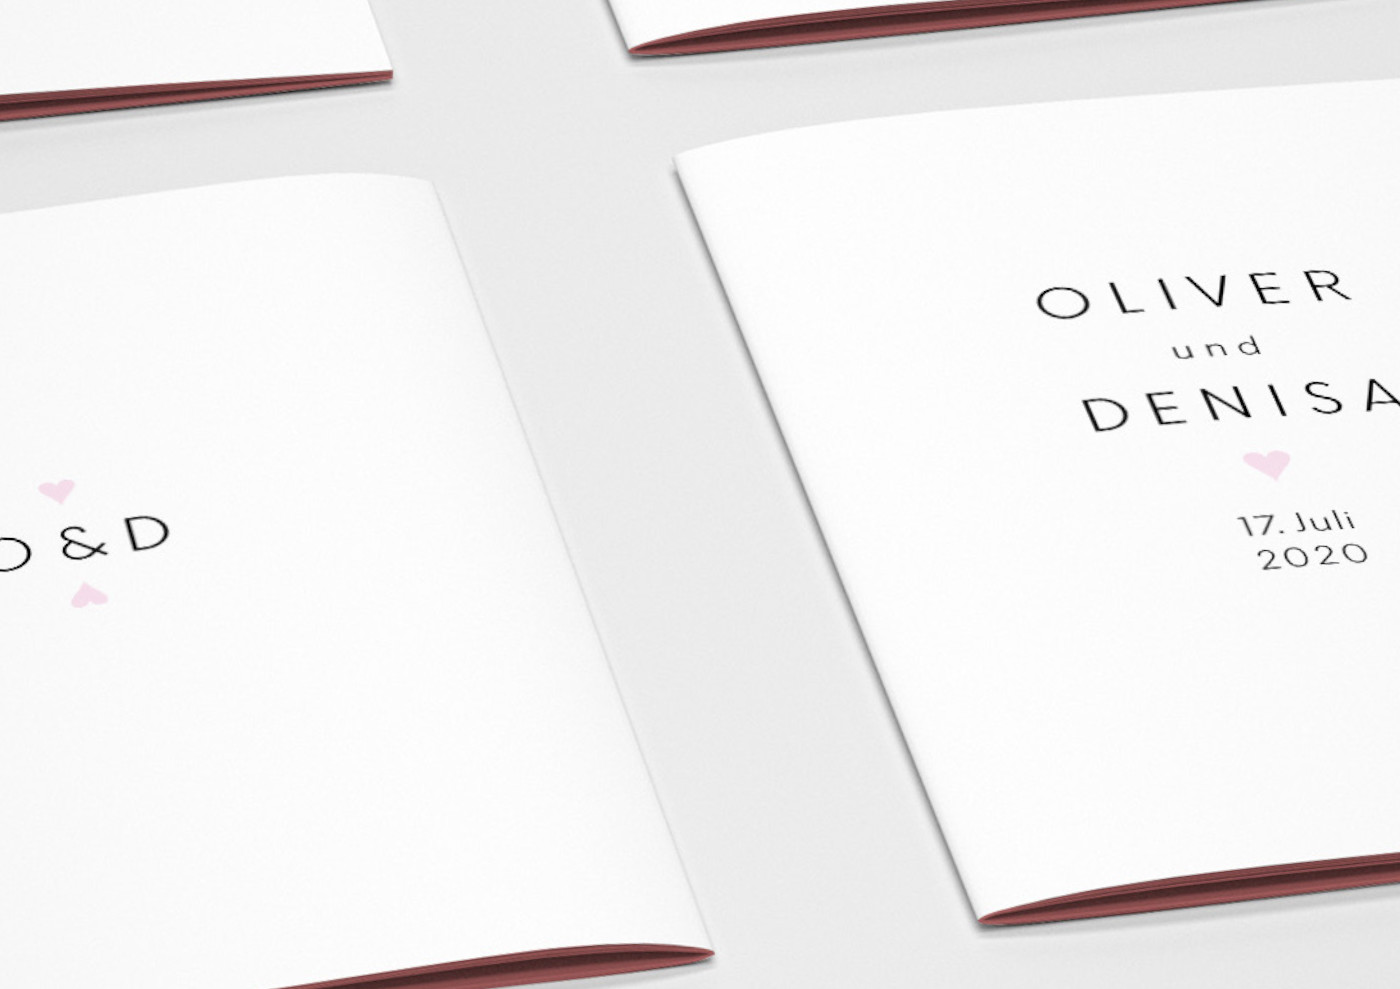 Geschenkkarte HOCHZEIT OLIVER UND DENISA 2020 Design, Layout, Satz, Reinzeichnung, Bildbearbeitung HOCHZEIT OLIVER UND DENISA Geschenkkarte